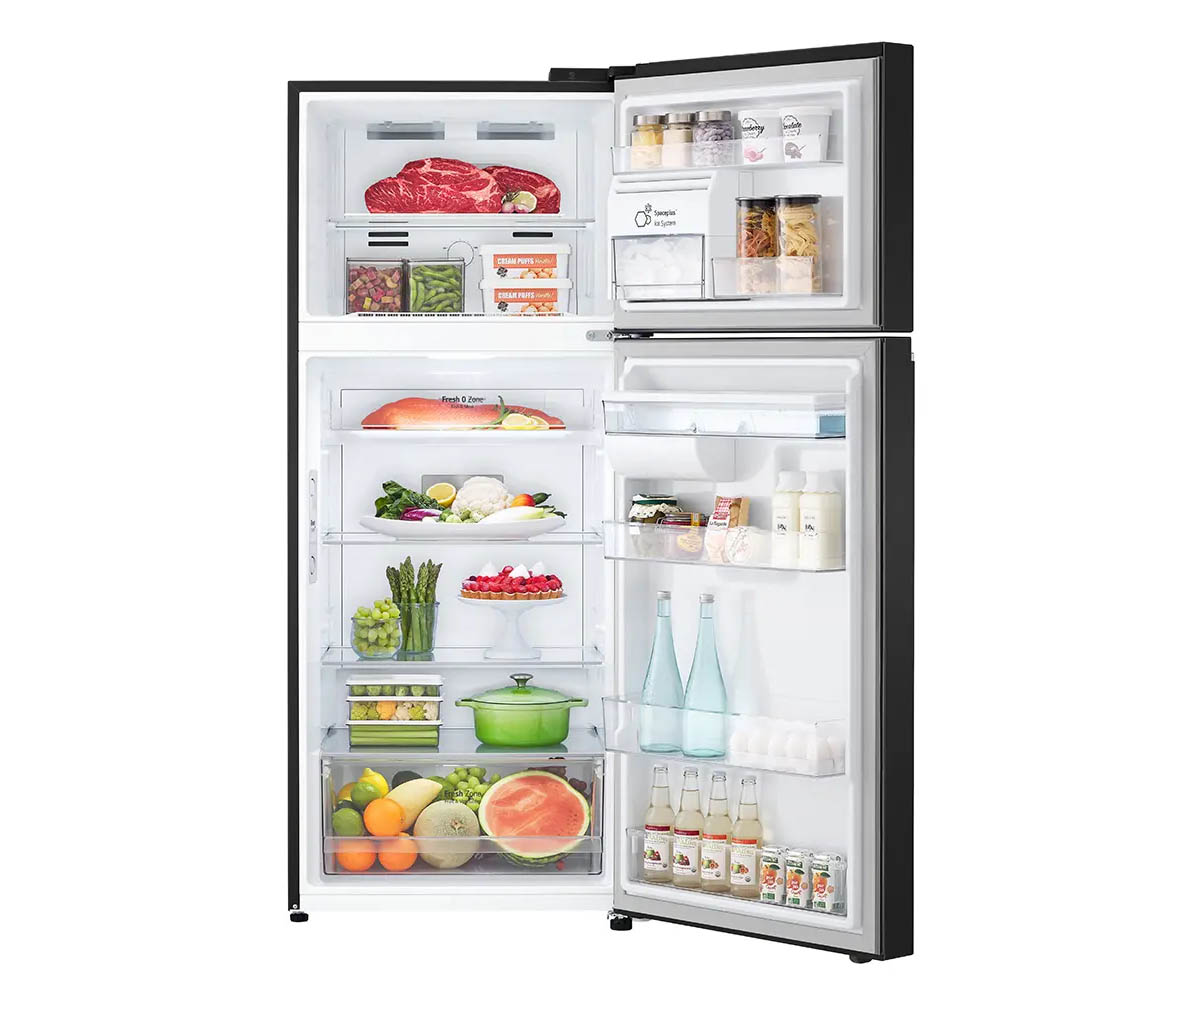 Tủ Lạnh LG Inverter GN-D372BLA có dung tích lên đến 374 lít